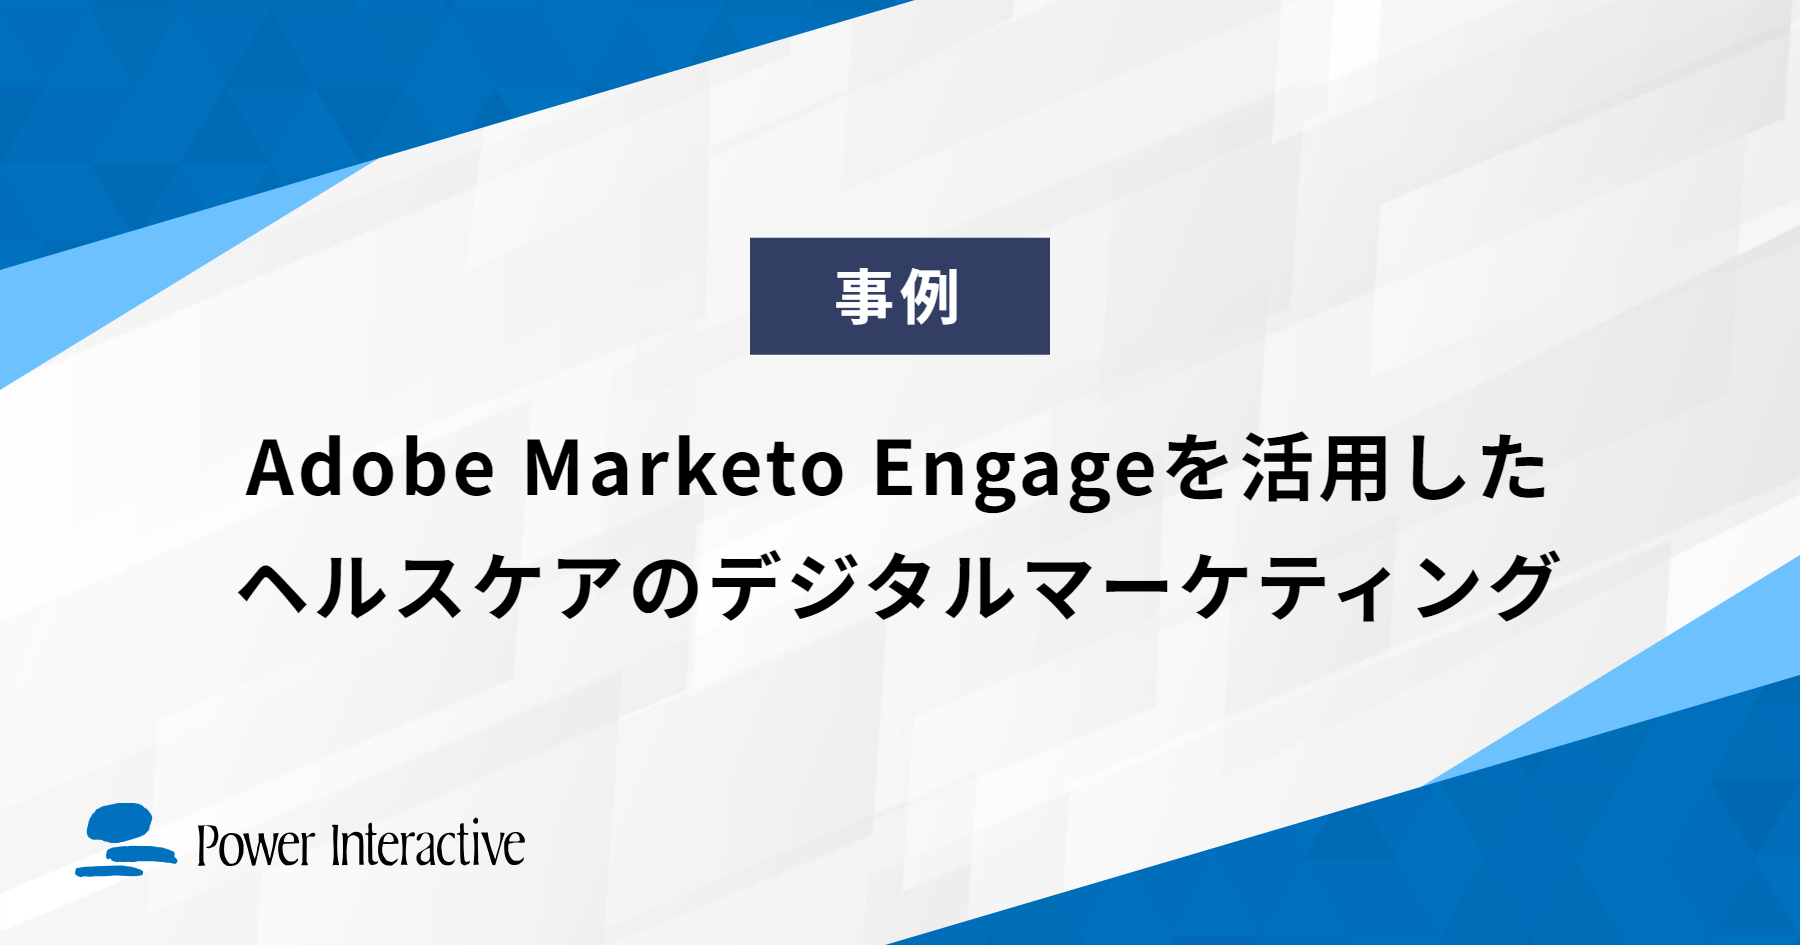 Adobe Marketo Engageを活用したヘルスケアのデジタルマーケティング